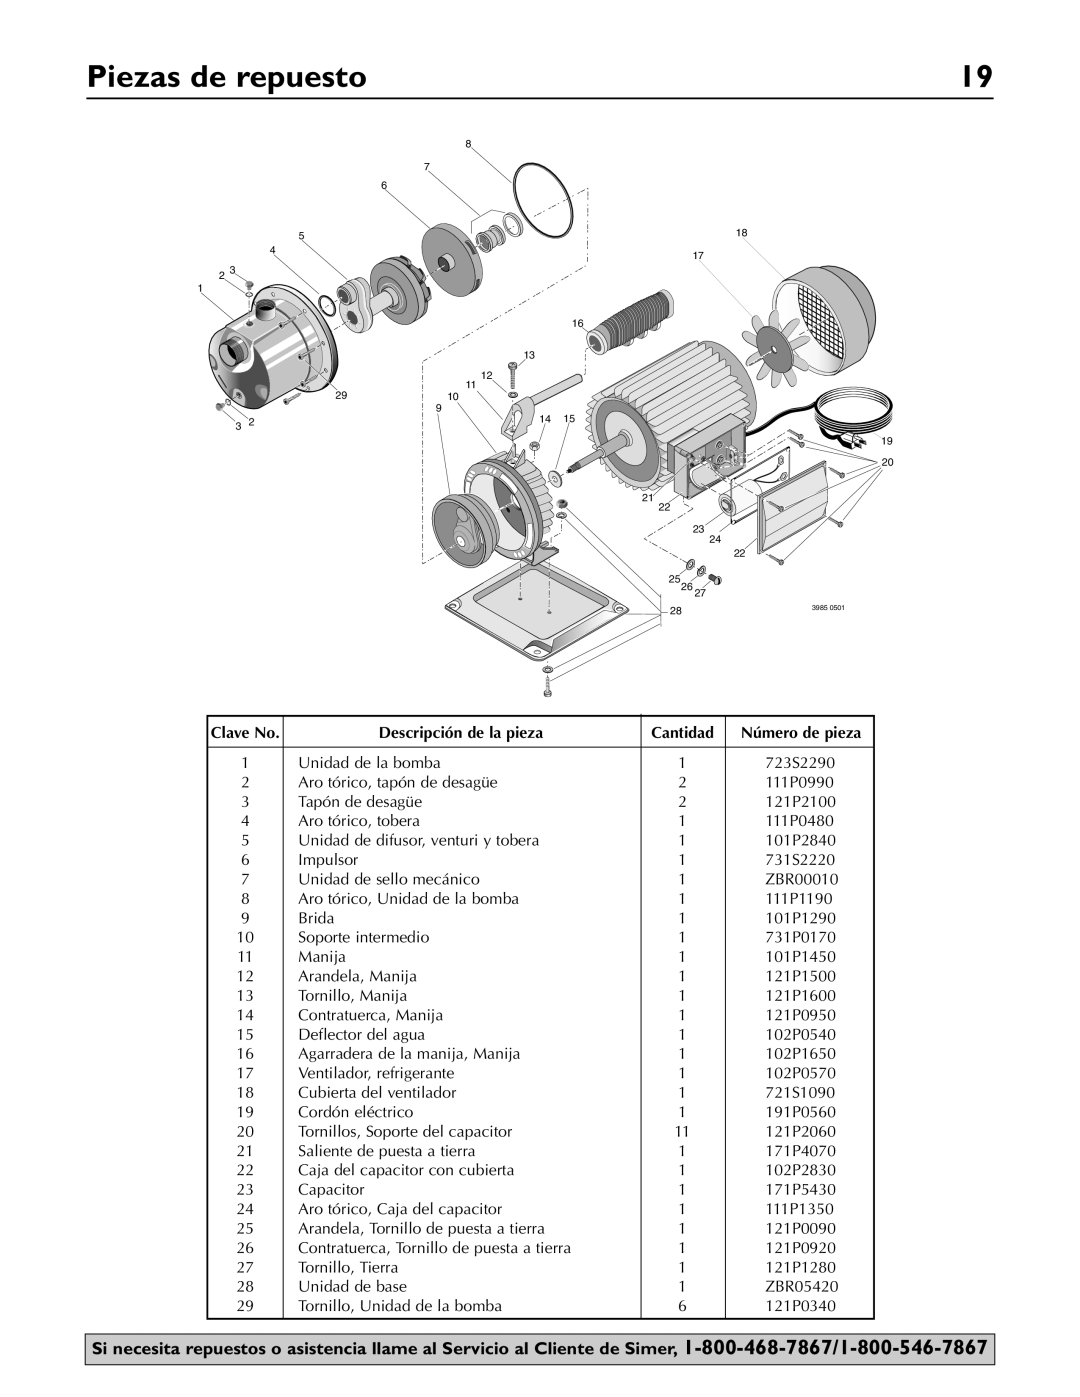 Simer Pumps 2825SS owner manual Piezas de repuesto, Clave No, Descripción de la pieza, Cantidad, Número de pieza 